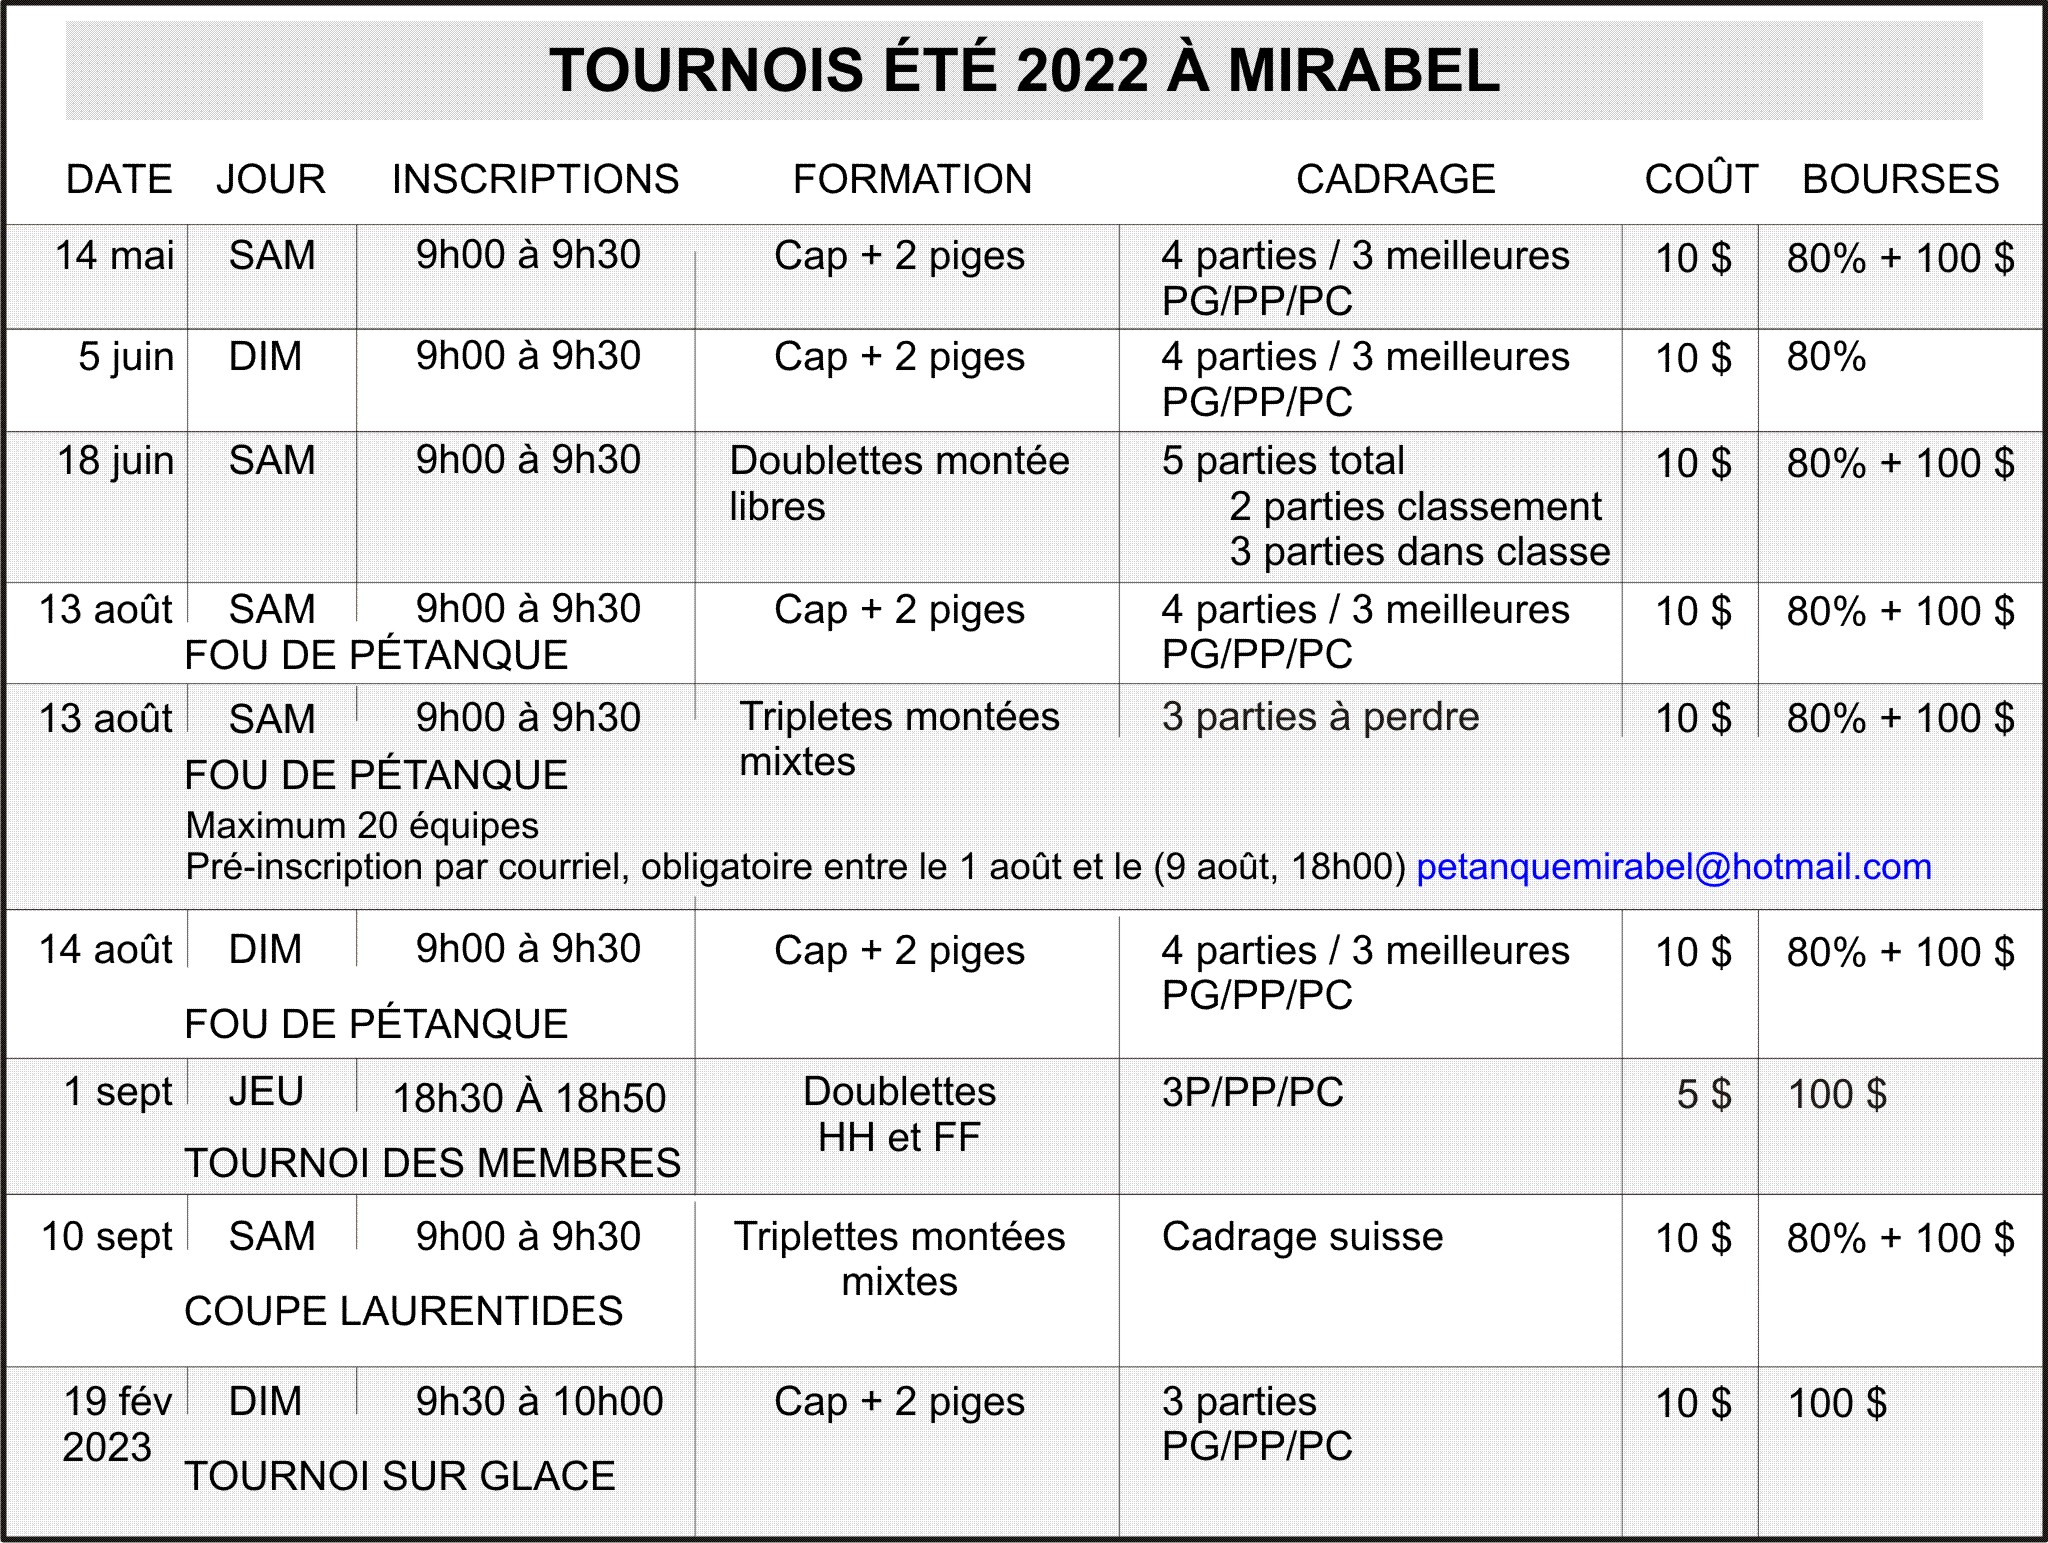 Liste des tournois été 2022 à Mirabel